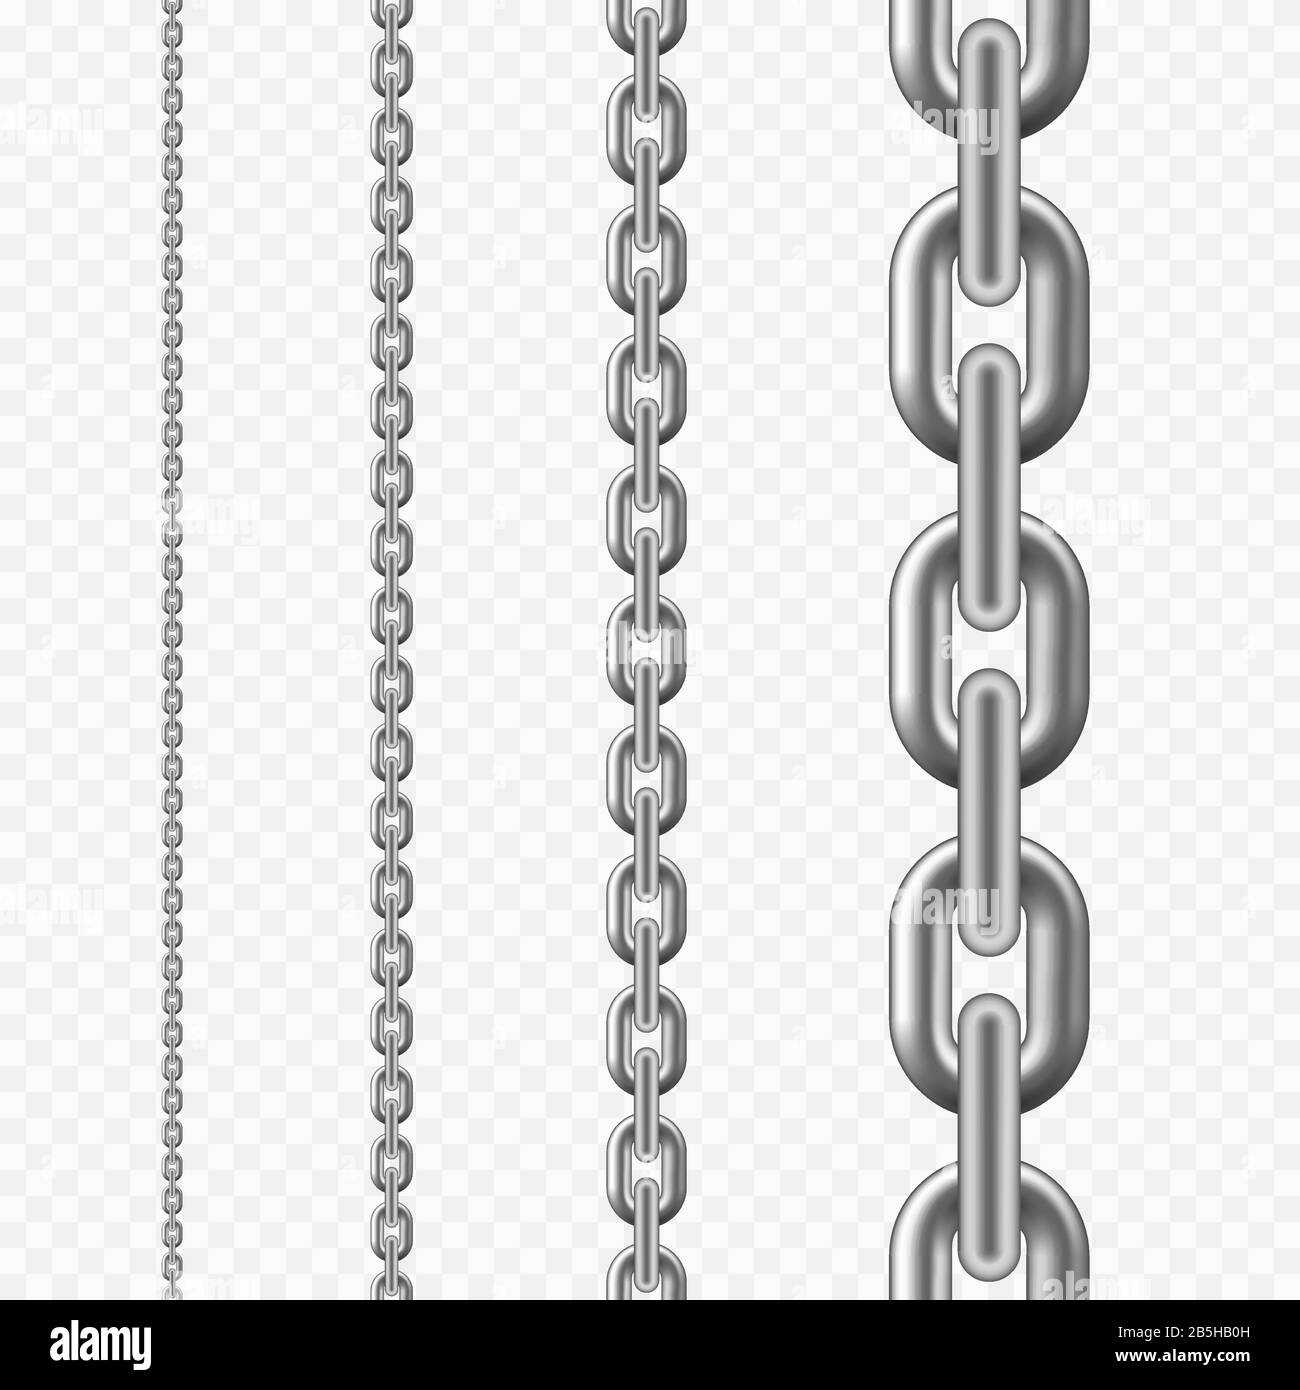 Modello di catena senza giunzioni. Trama a catena metallica color argento. Illustrazione vettoriale isolata su sfondo trasparente Illustrazione Vettoriale